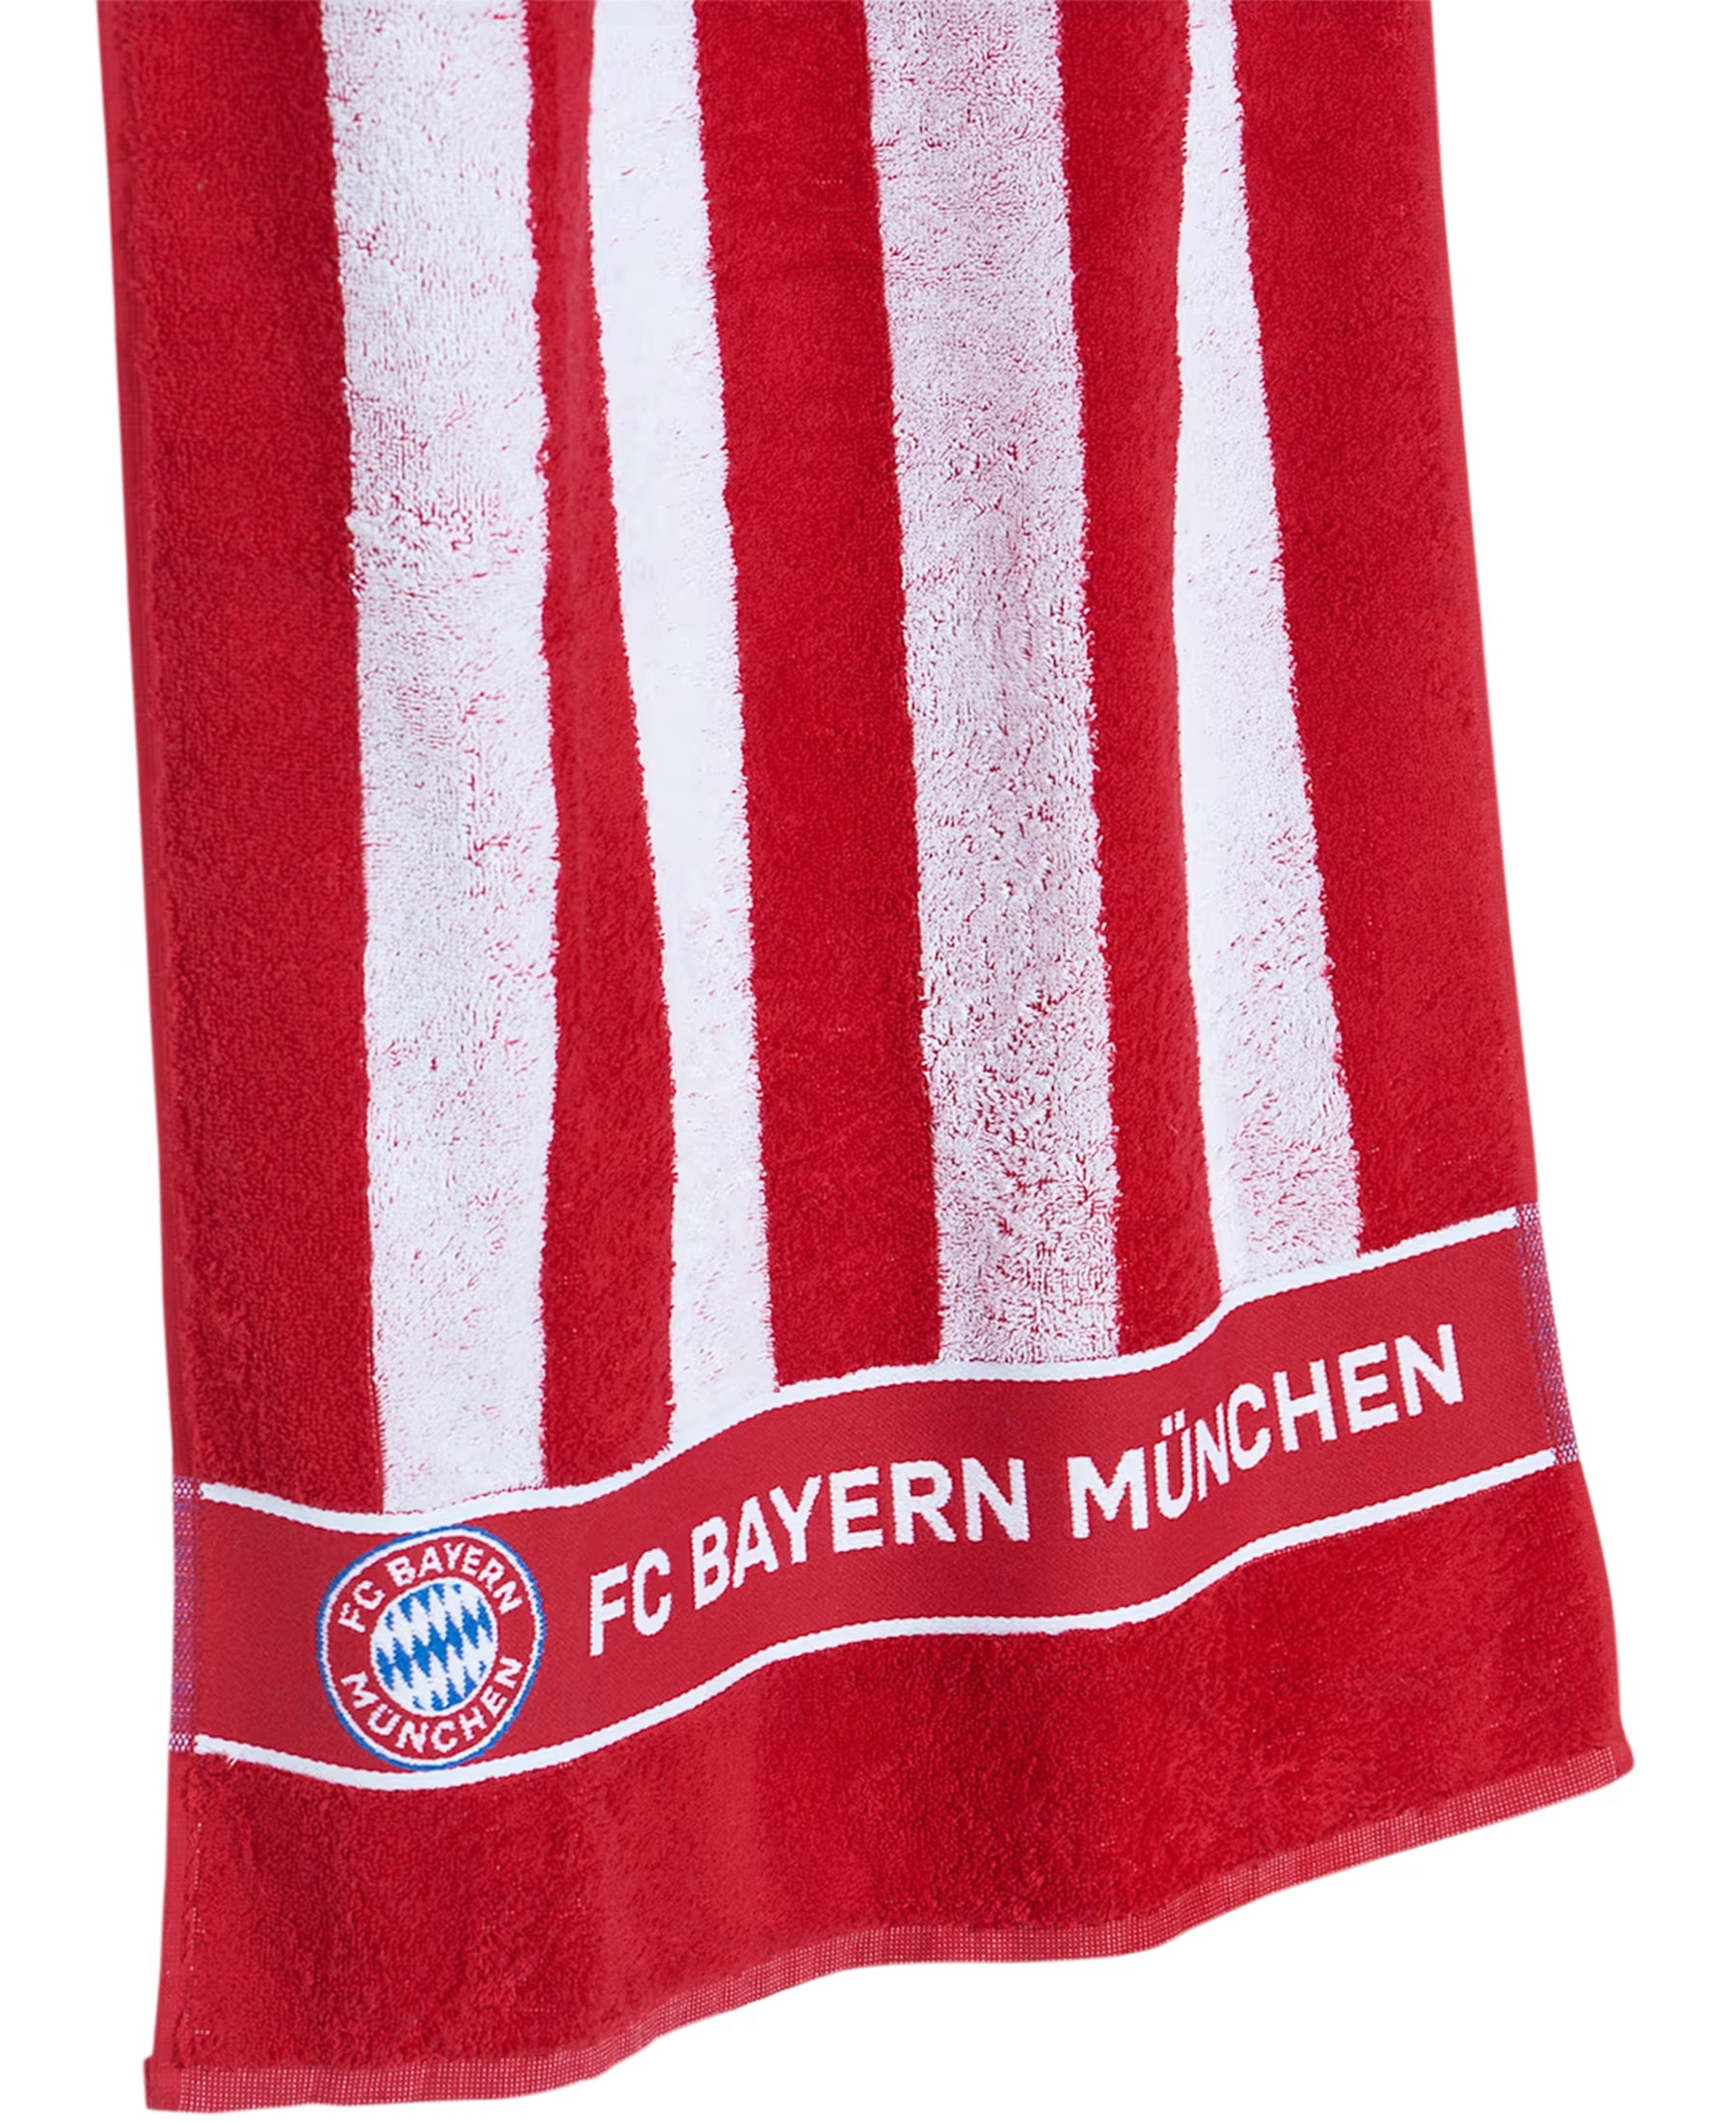 Das FC Bayern München FCB Duschtuch (28370) ist ein hochwertiges und saugfähiges Handtuch, perfekt für jeden Fan. Zeigen Sie Ihre Zugehörigkeit zum FCB auch im Badezimmer. Mit dem gestickten Vereinslogo ist dieses Handtuch ein echter Hingucker. Holen Sie sich das offizielle Fanartikel jetzt bei SHOP4TEAMSPORT.